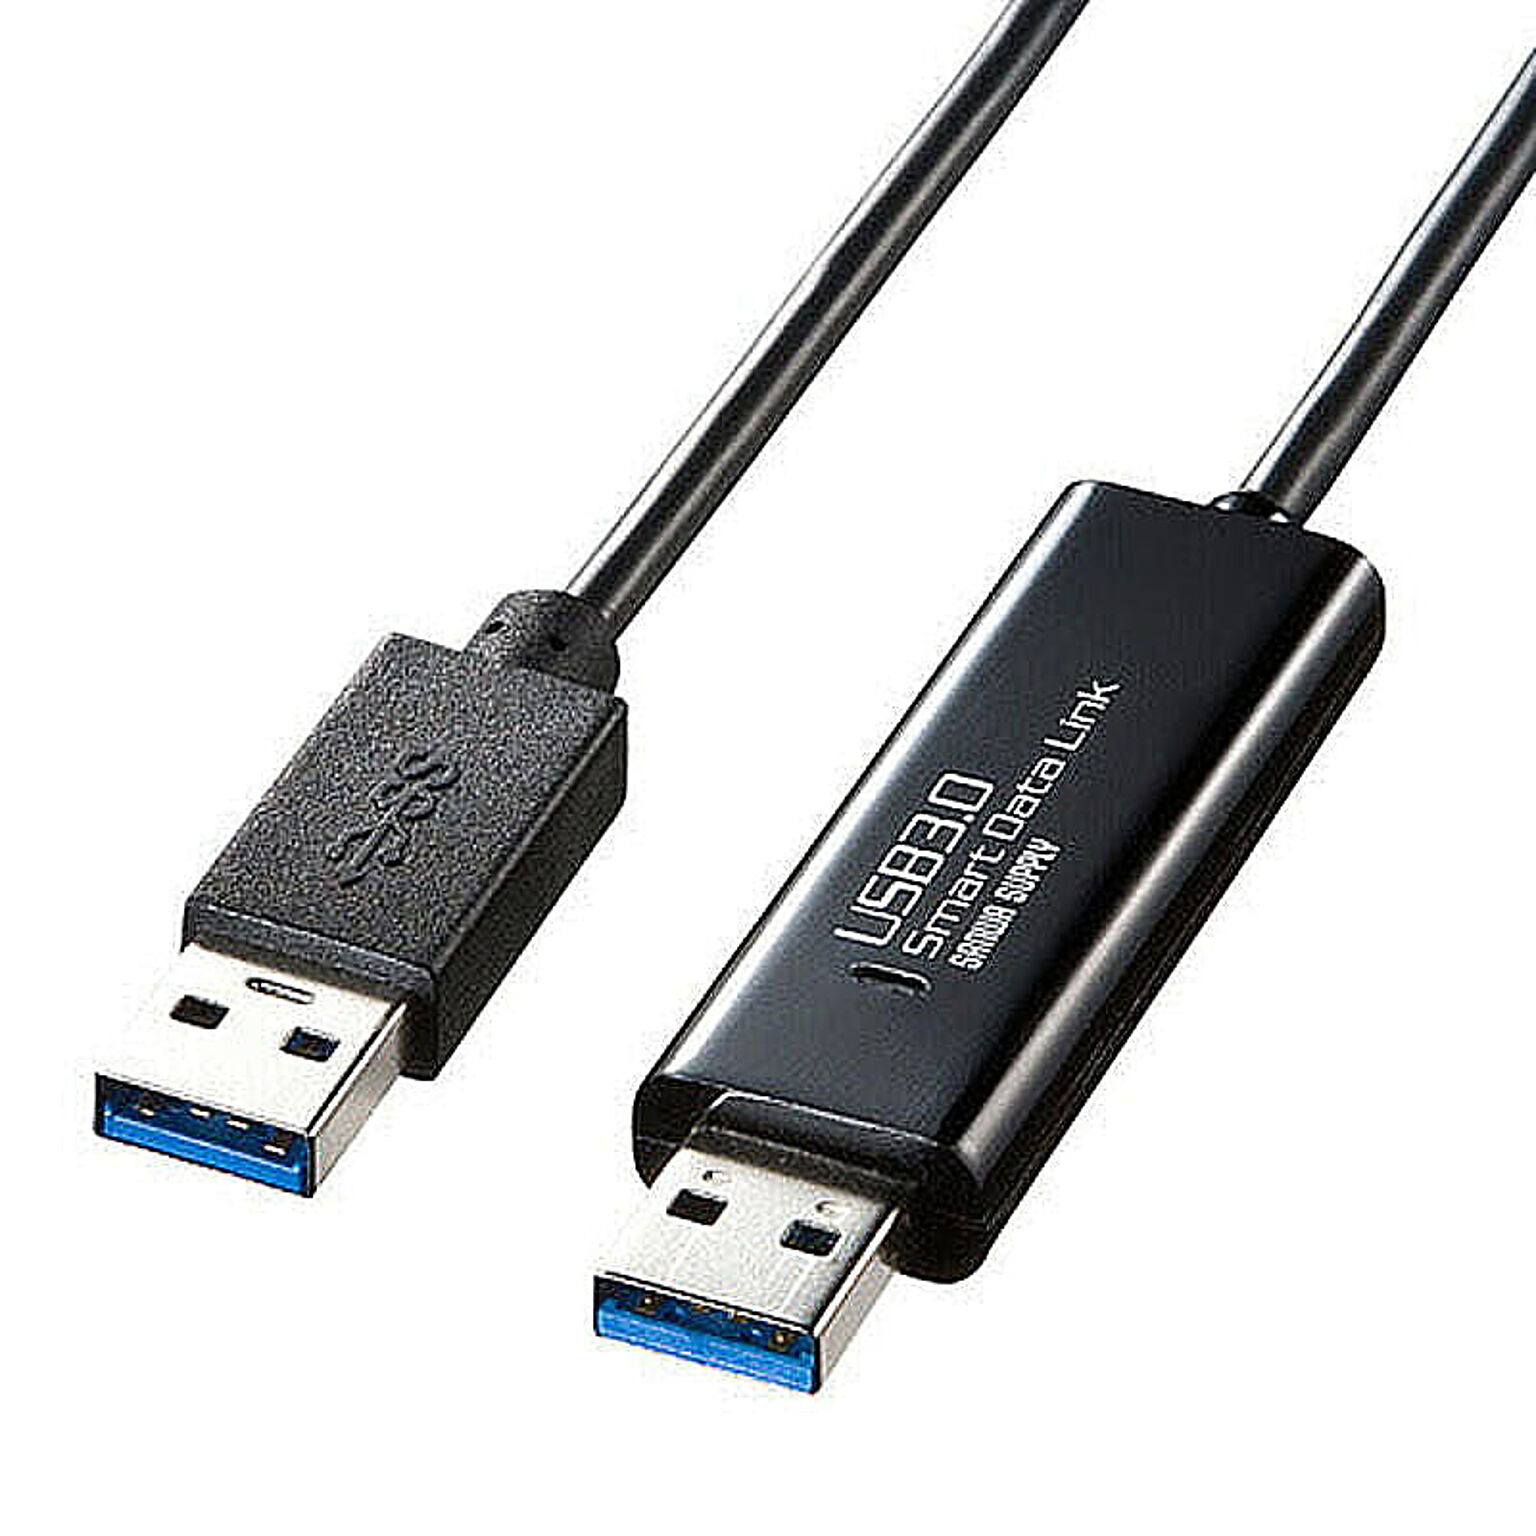 サンワサプライ　ドラッグ&ドロップ対応USB3.0リンクケーブル(Mac/Windows対応)　KB-USB-LINK4 管理No. 4969887845615